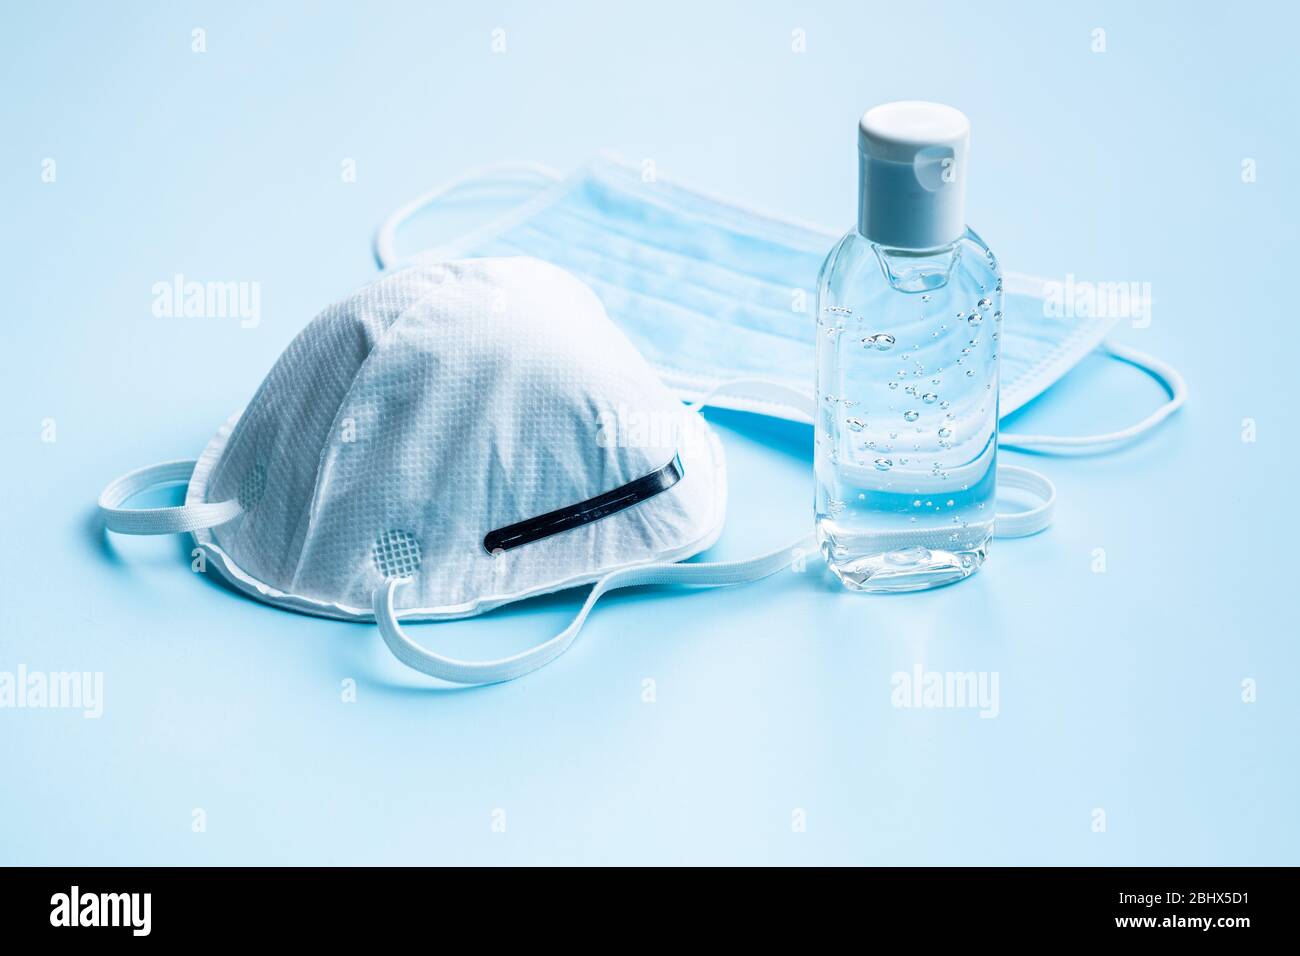 Gel désinfectant pour les mains et masque de protection contre le coronavirus sur fond bleu. Banque D'Images